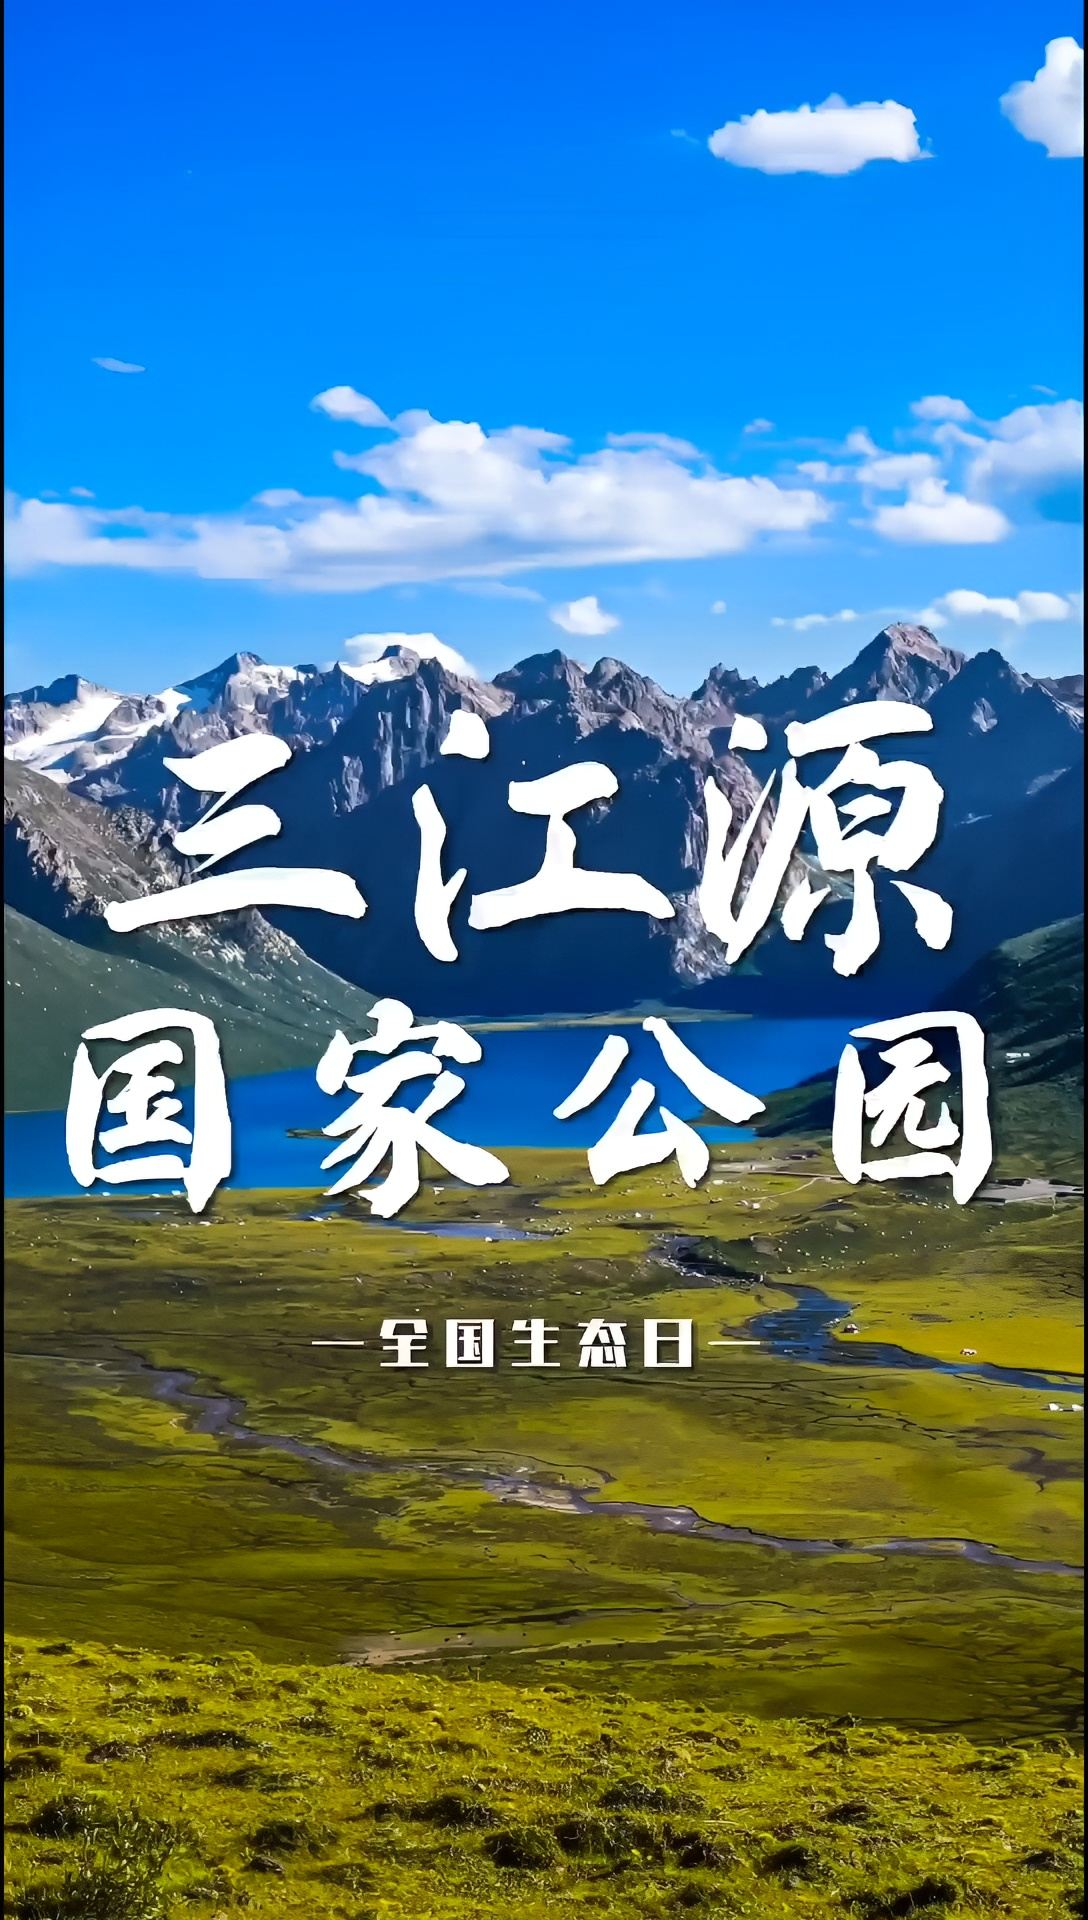 今天是首个全国生态日，一起去看看三江源国家公园的绿水青山吧！